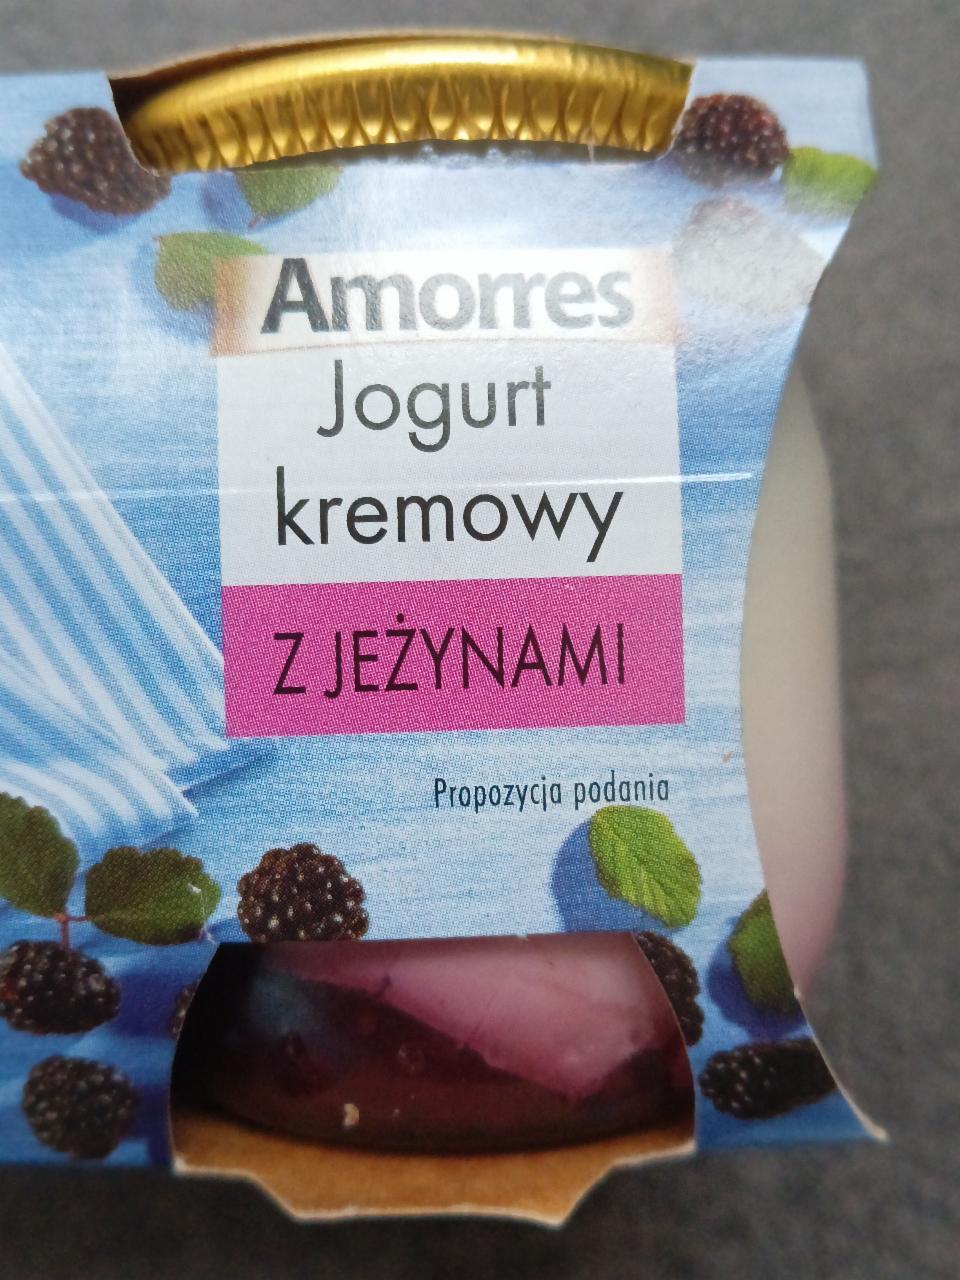 Фото - Йогурт кремовый с ягодами jogurt kremowy z jeżynami Amorres